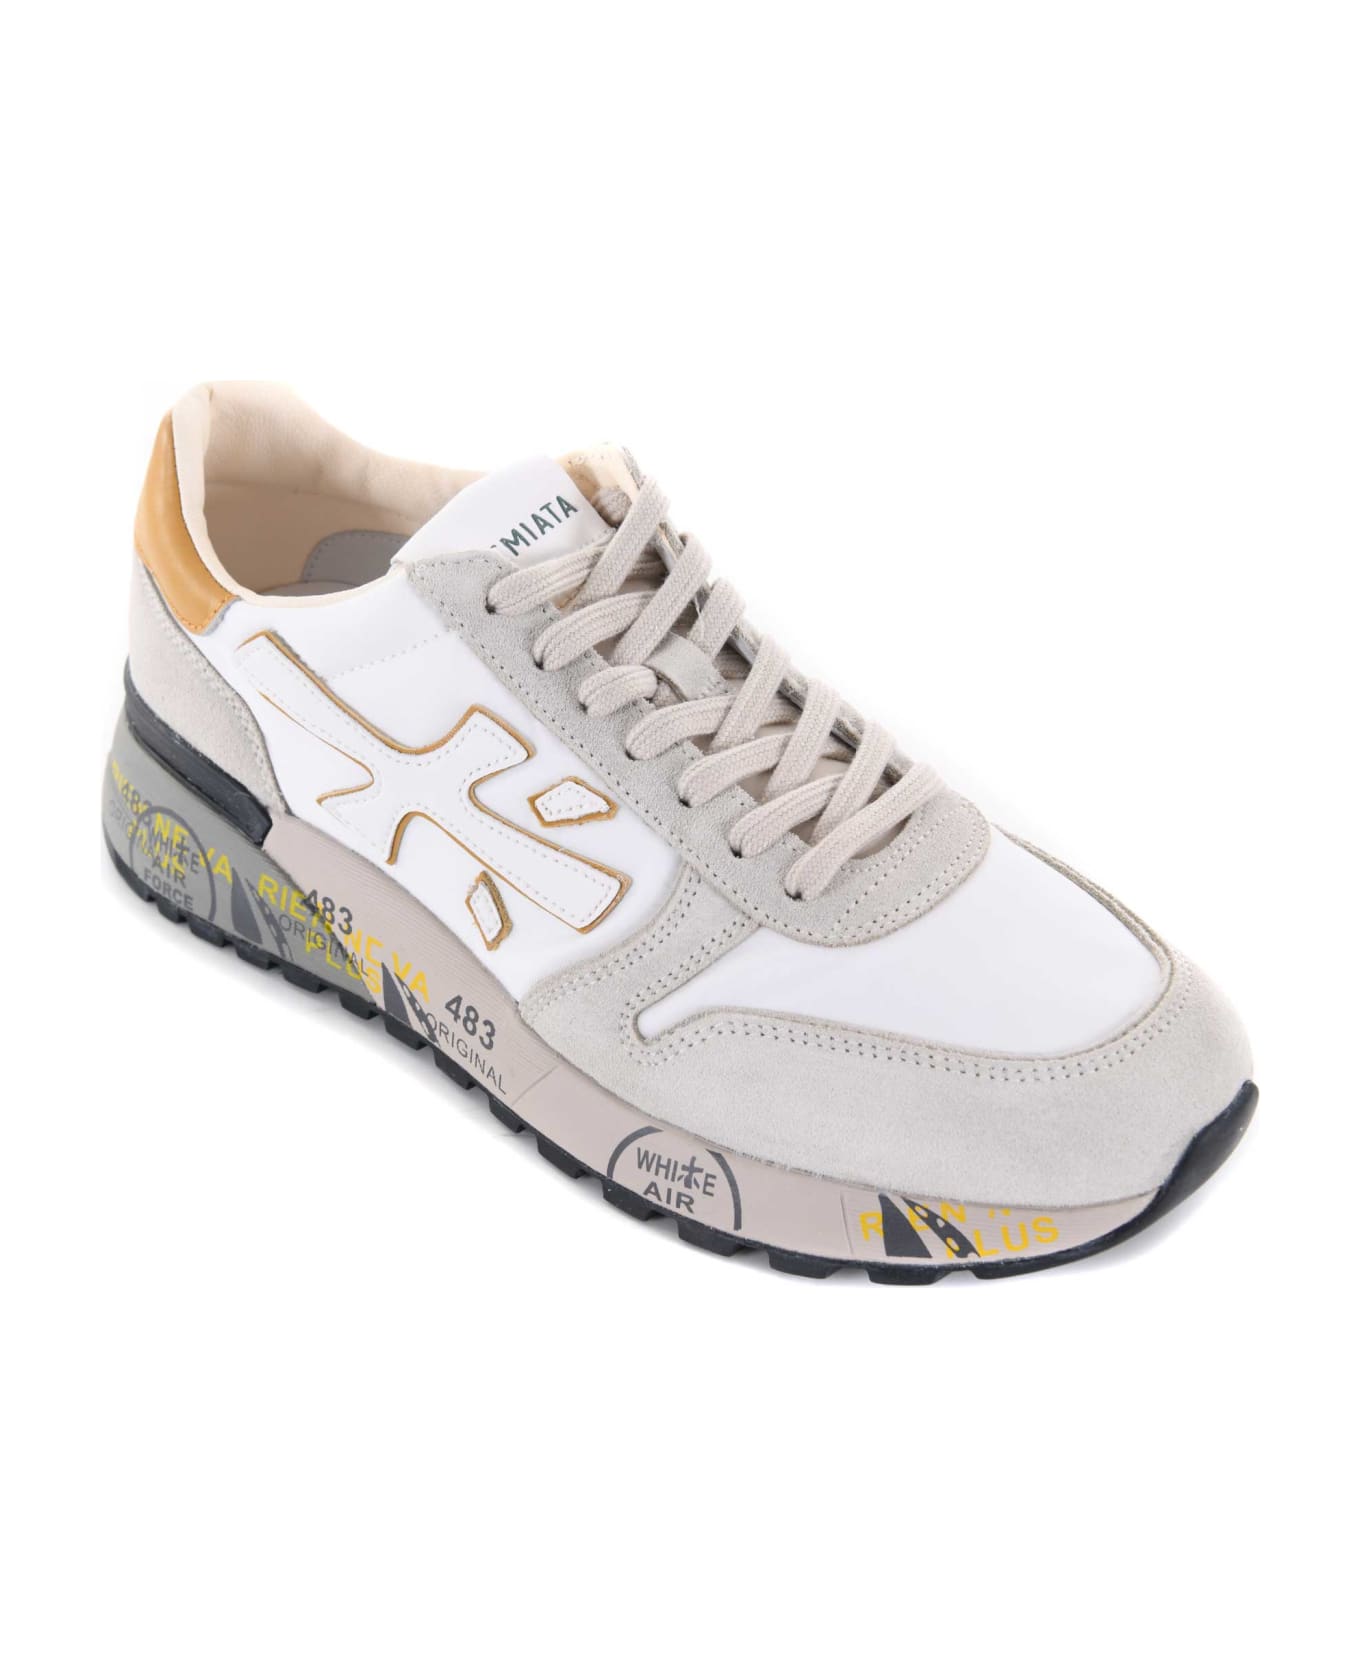 Premiata Sneakers In Suede And Nylon Canvas - Ghiaccio/bianco